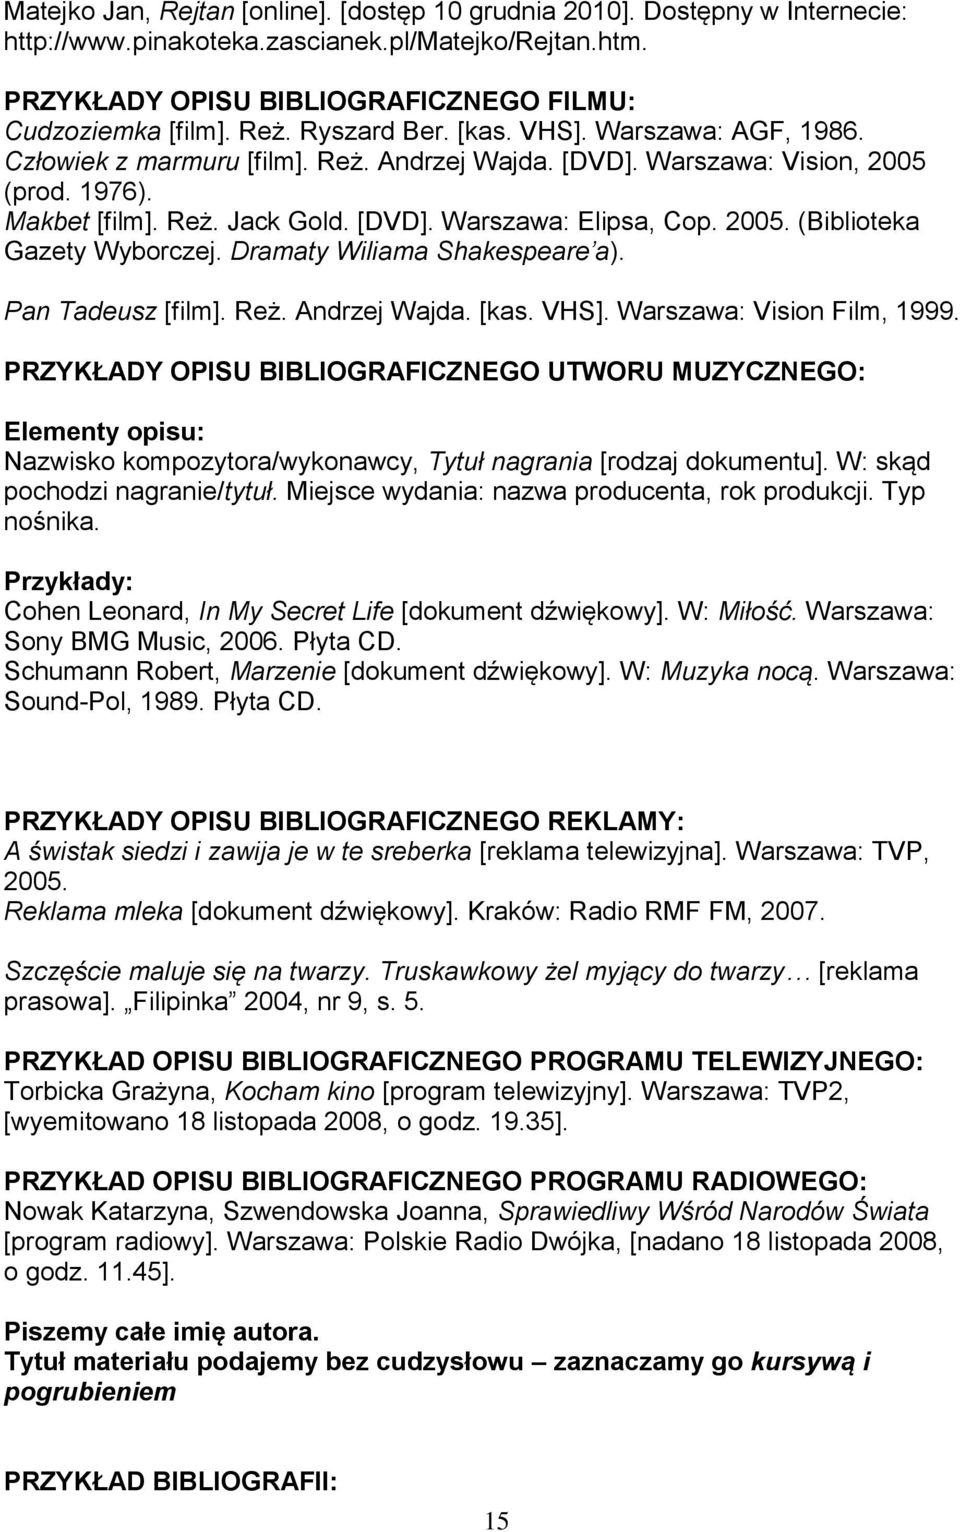 2005. (Biblioteka Gazety Wyborczej. Dramaty Wiliama Shakespeare a). Pan Tadeusz [film]. Reż. Andrzej Wajda. [kas. VHS]. Warszawa: Vision Film, 1999.